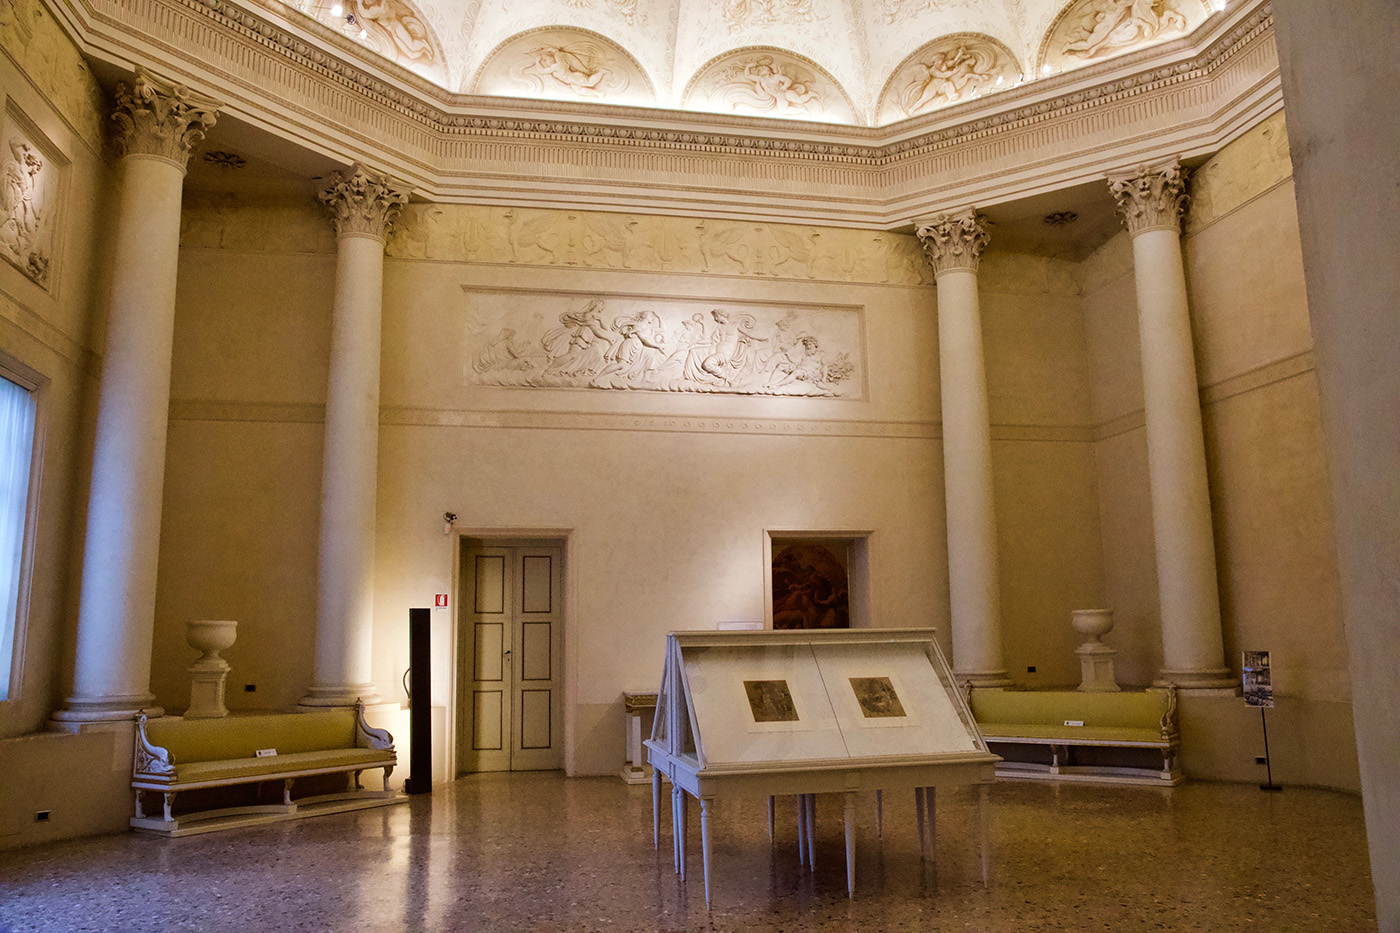 Sala neoclassica di Palazzo Milzetti. Si vedono gli stucchi, alcuni divani, e alcune colonne corinzie negli angoli, così da simulare un ottagono.